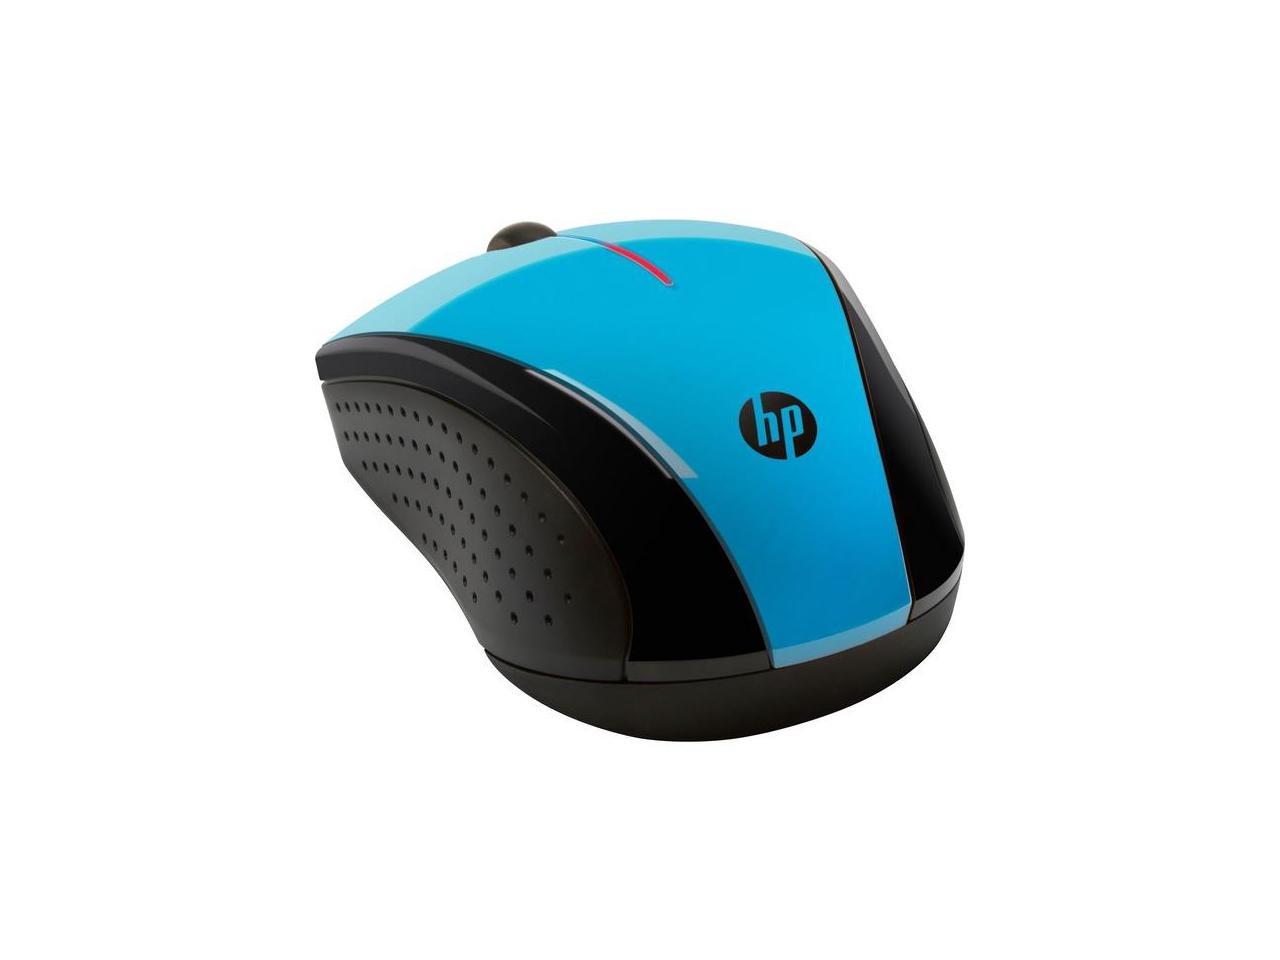 HP CONSUMER K5D27AA#ABL HP x3000 Mouse Aqua Blue